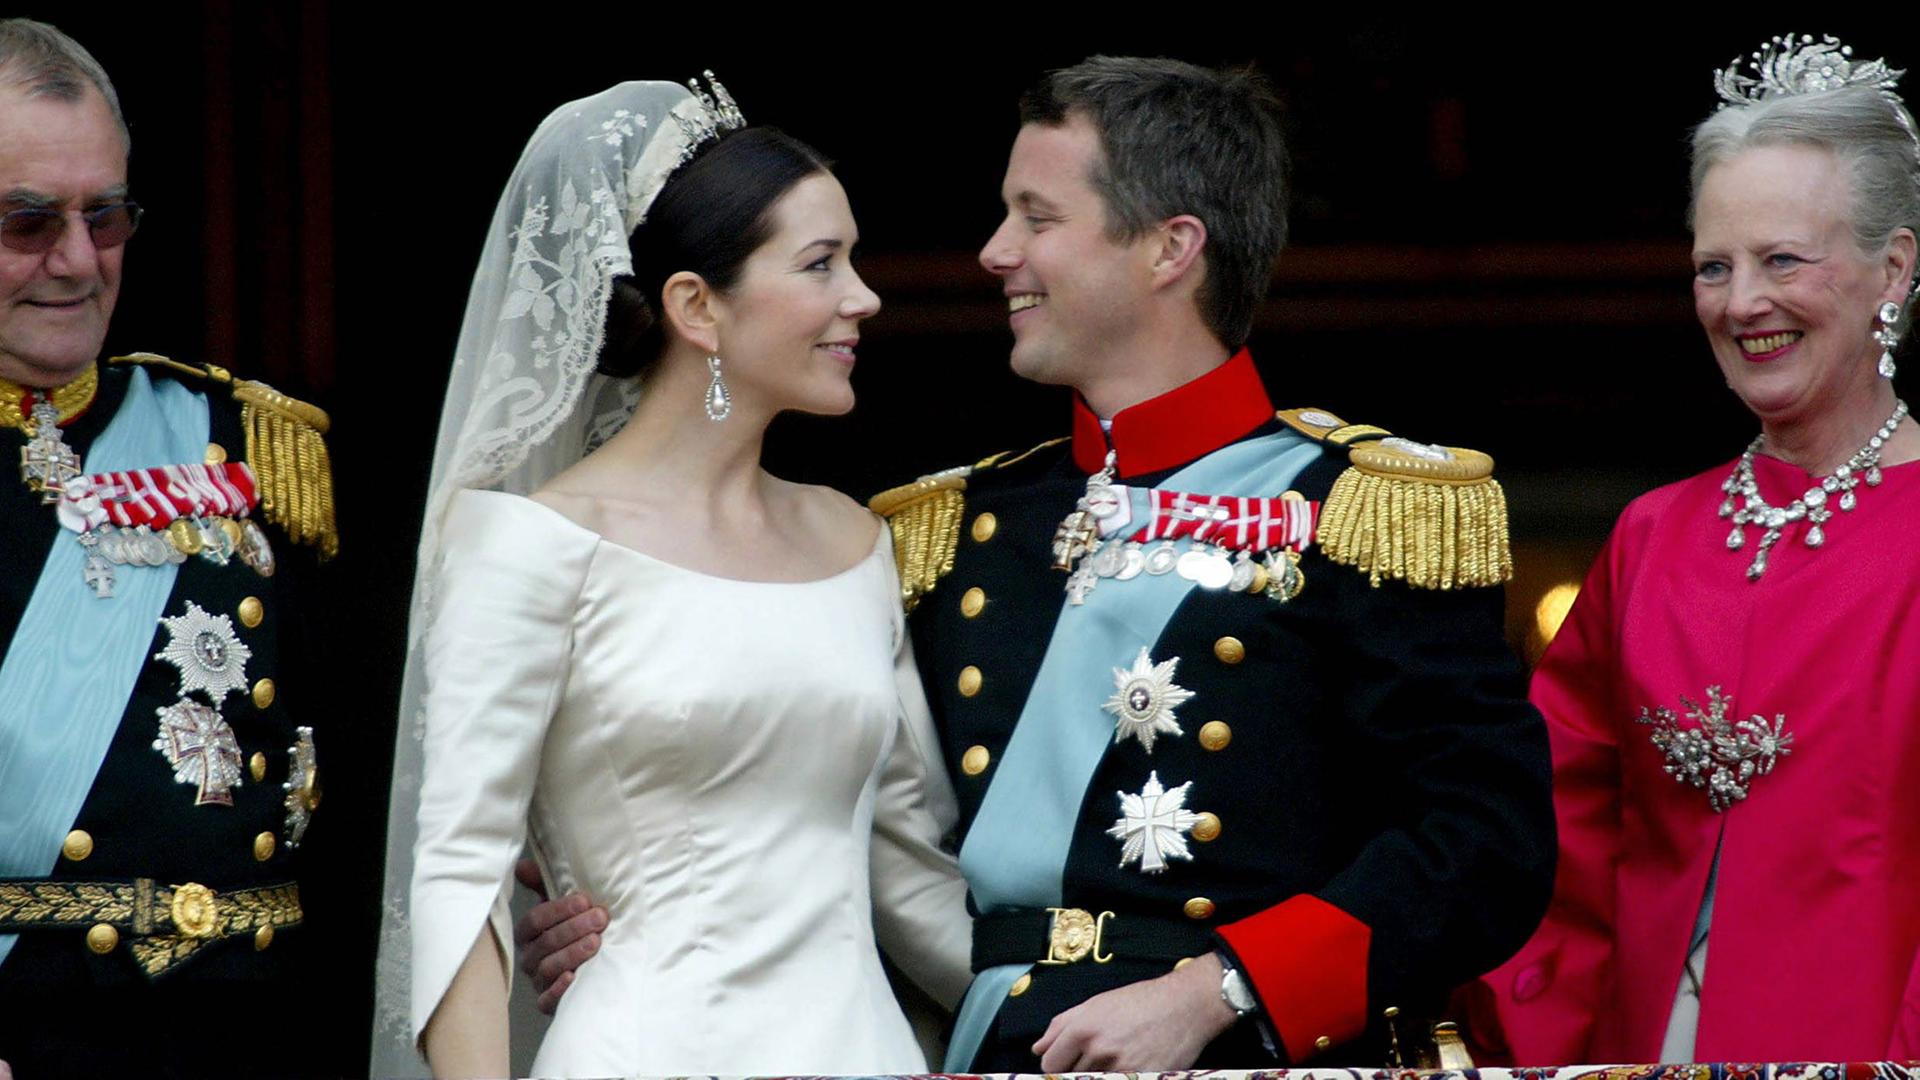 Kronprinz Frederik von Dänemark schaut am 14. Mai 2004 auf dem Balkon des Amalianborg Palast liebevoll seine Braut, Kronprinzessin Mary, an. 